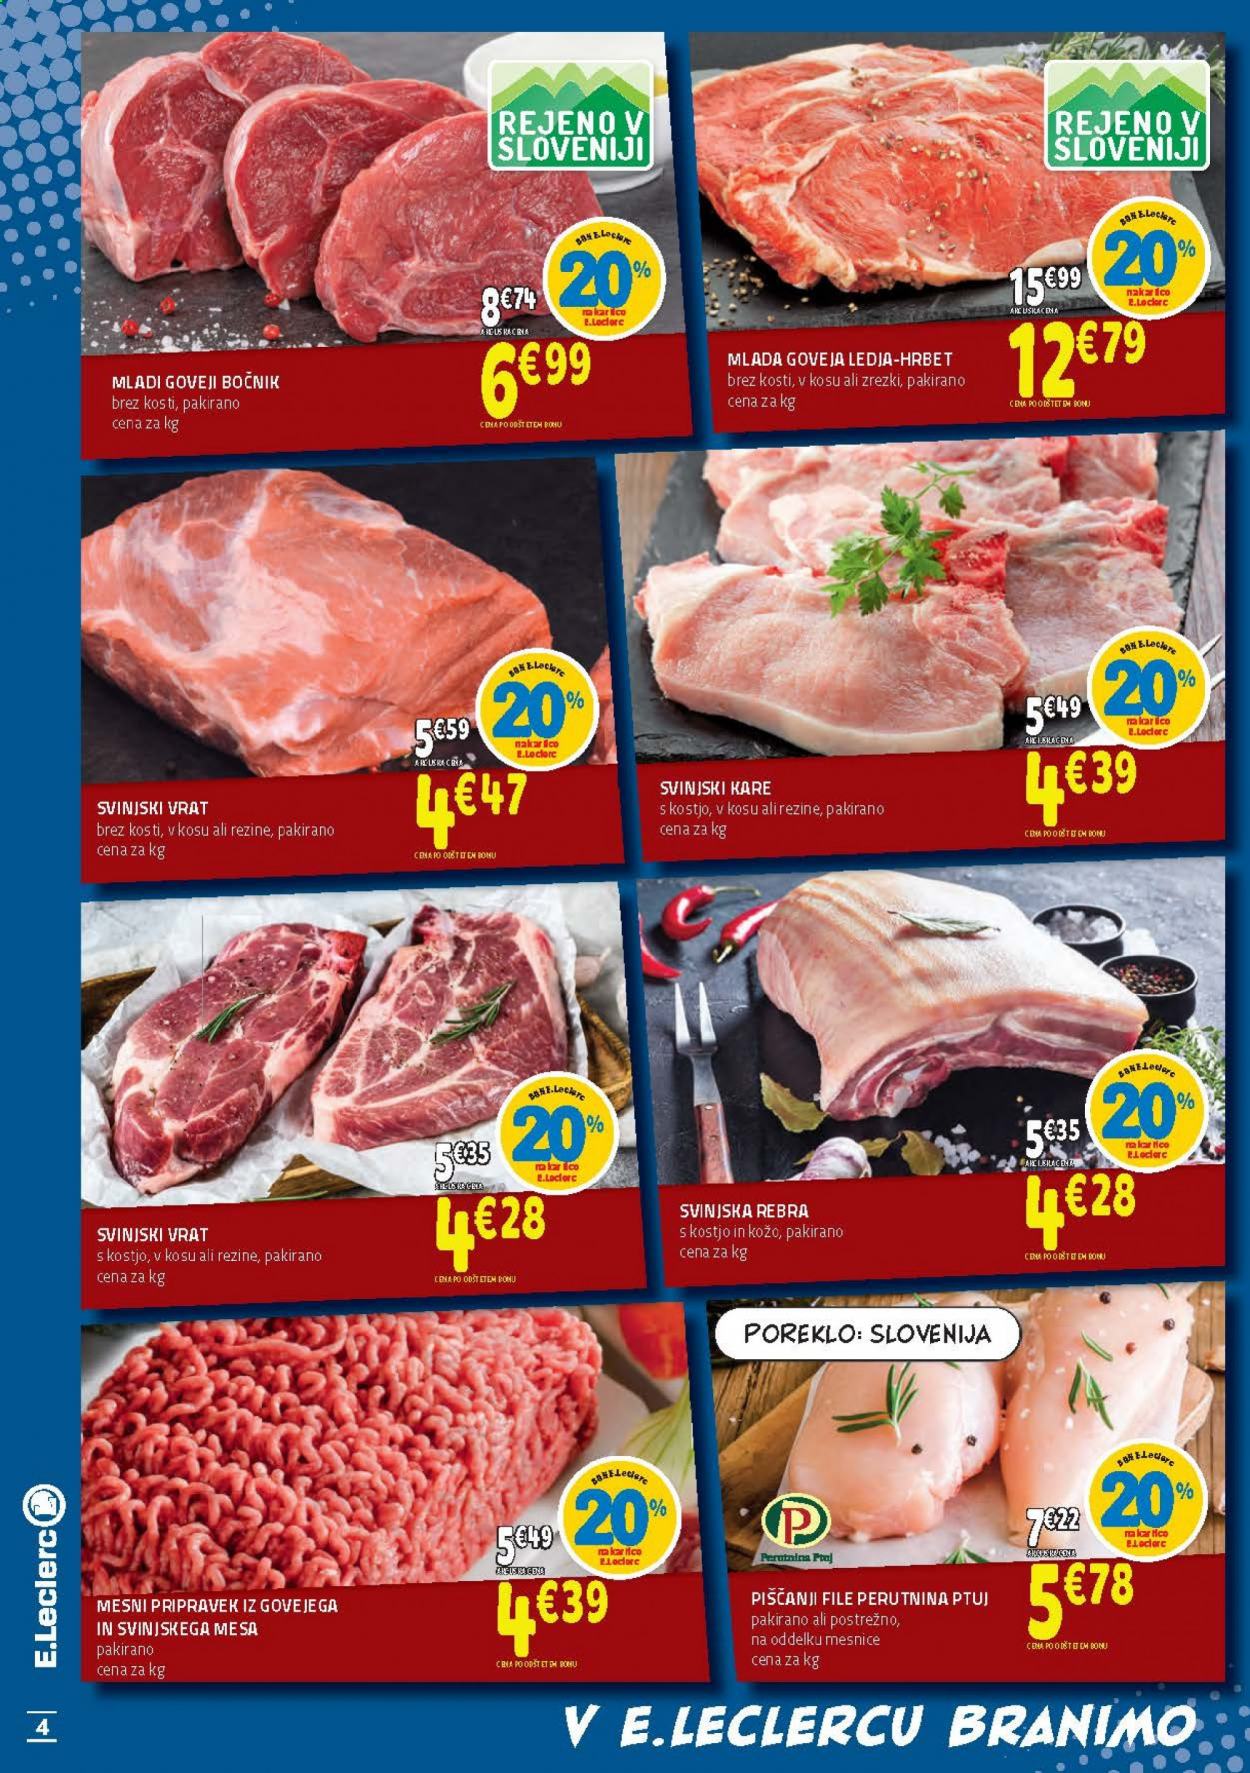 thumbnail - E.Leclerc katalog - 7.4.2021 - 17.4.2021 - Ponudba izdelkov - rebra, kare, svinjski vrat brez kosti, svinjska rebra, svinjski kare, svinjski vrat, svinjsko meso. Stran 4.